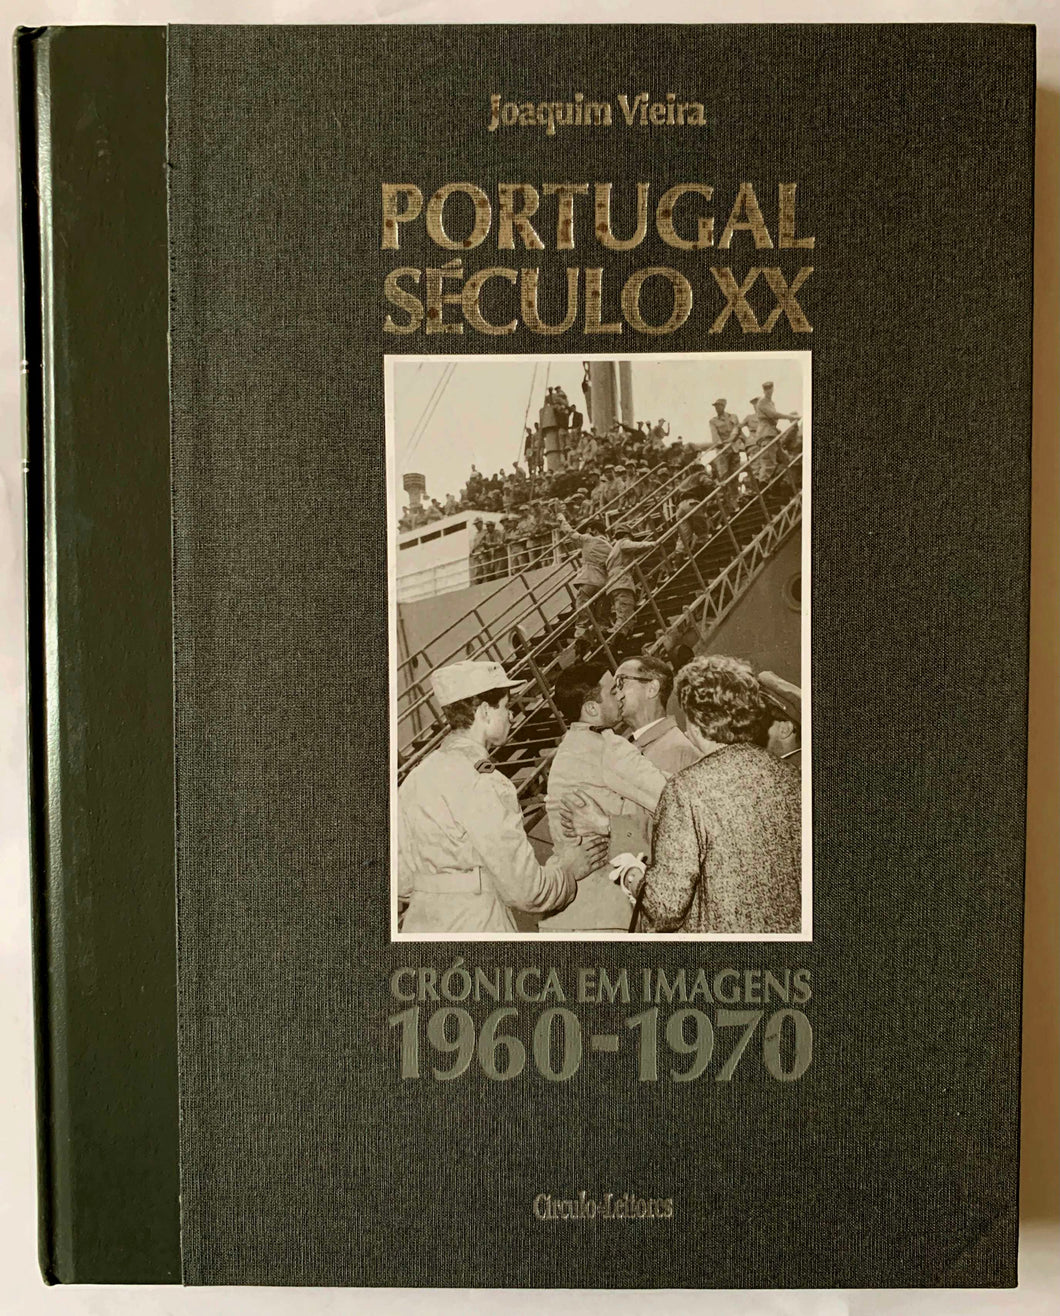 Portugal Século XX-Crónica em Imagens 1960-1970